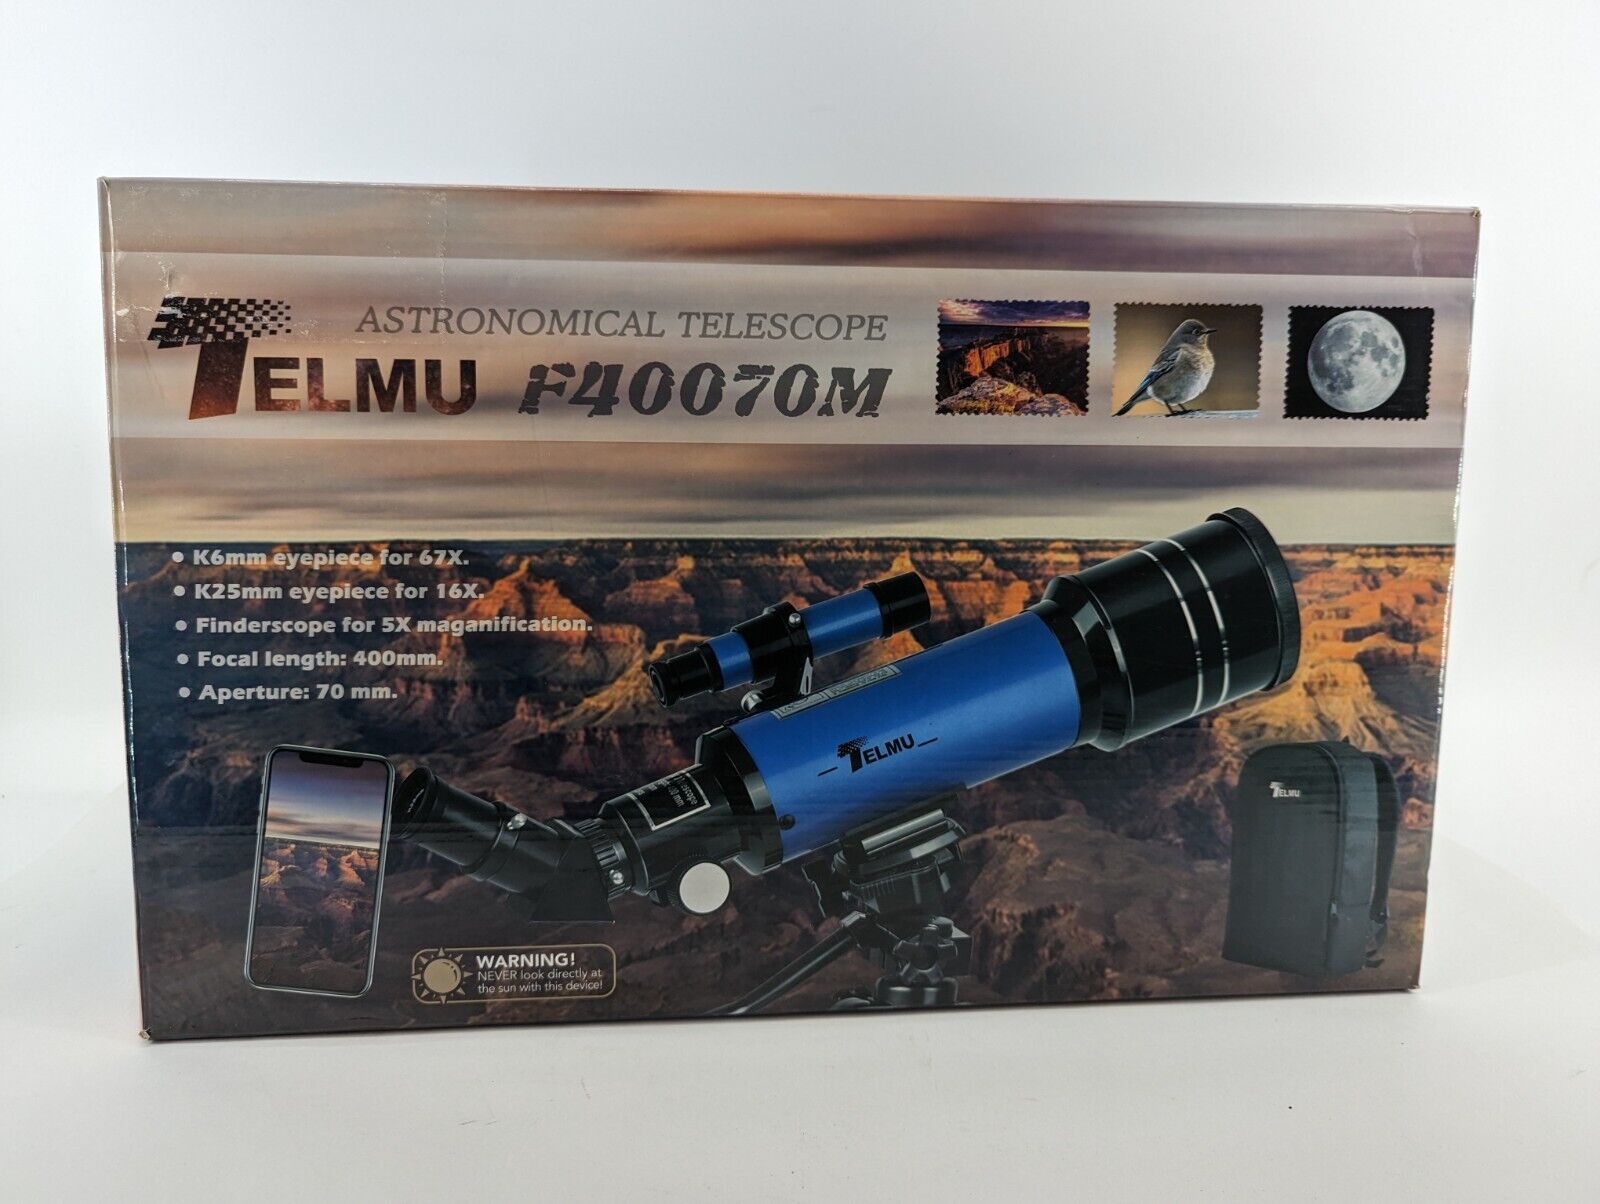 Elmu F40070m Telescope W/ Tripod & Backpack In Box